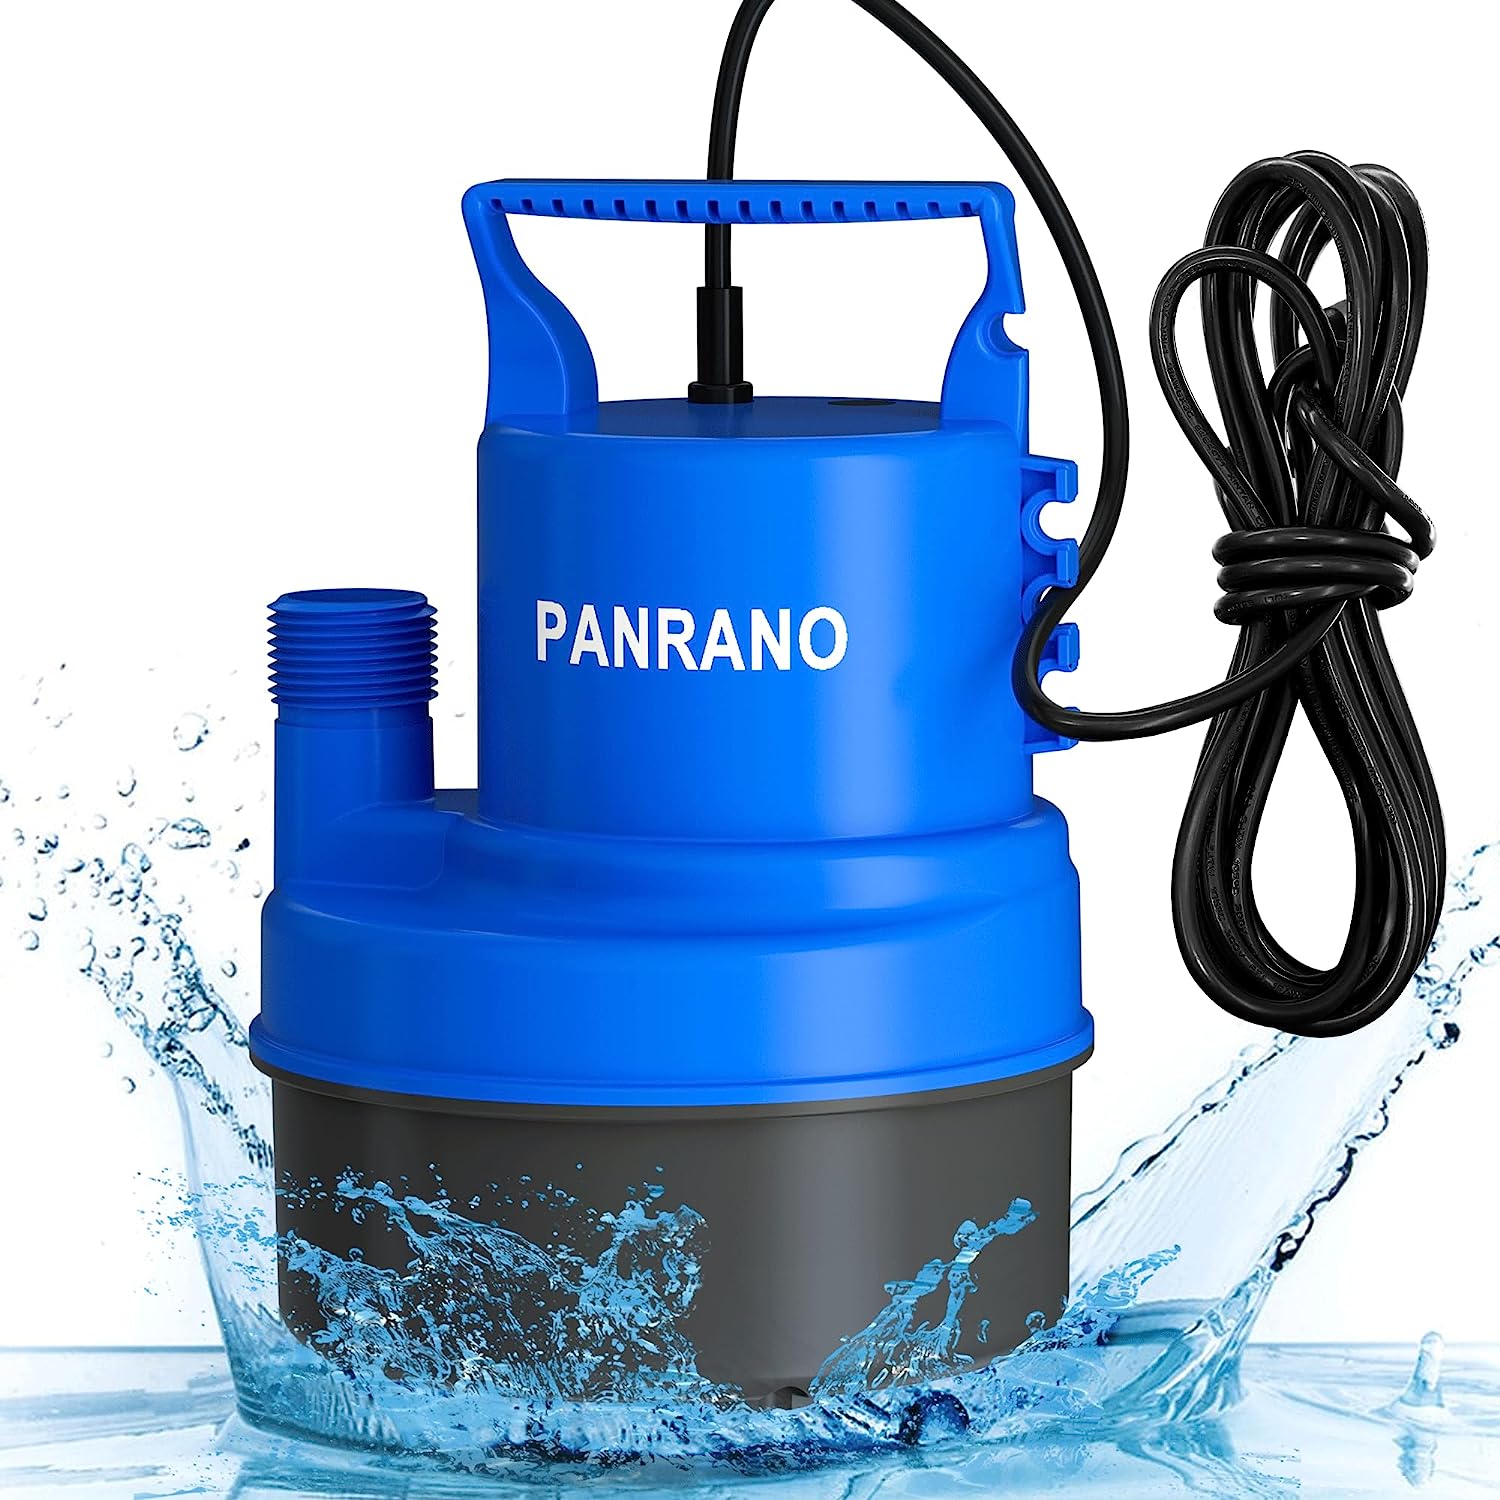 PANRANO Sump Pump Submersible 1/2 HP Water Pump - 2200 [...]